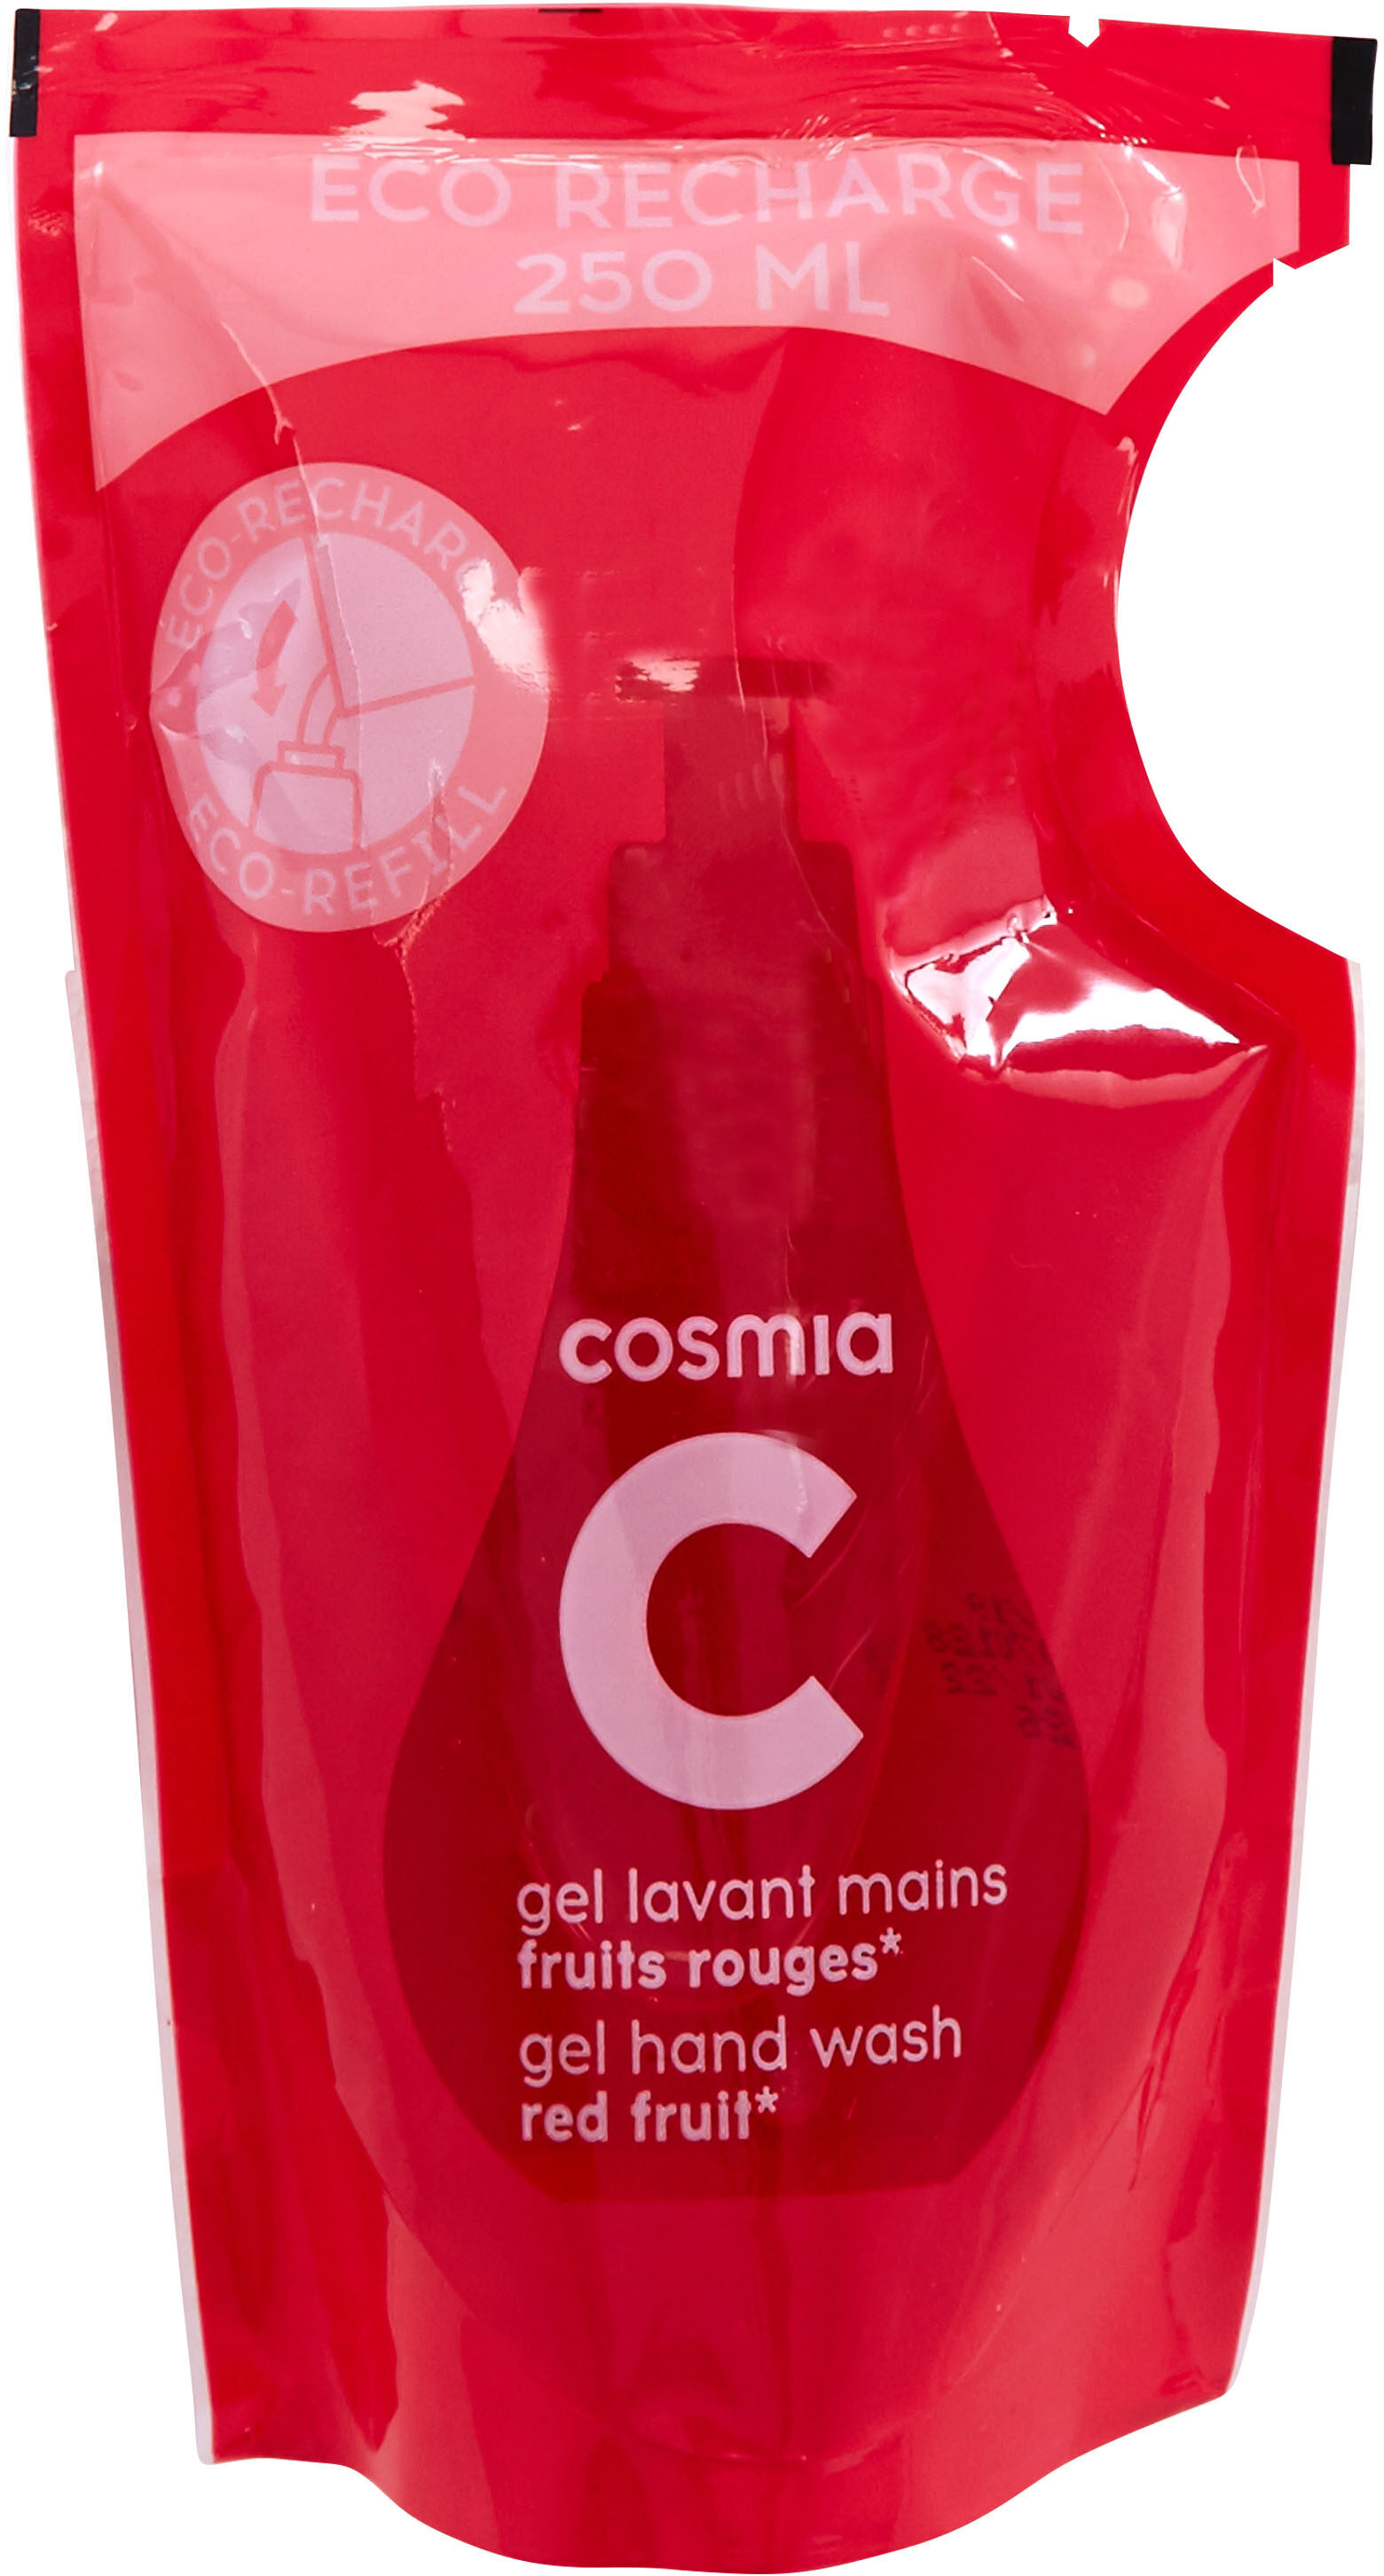 Cosmia - éco-recharge gel lavant mains - parfum fruits rouges* - tous types de peaux - 250ml - Produit - fr